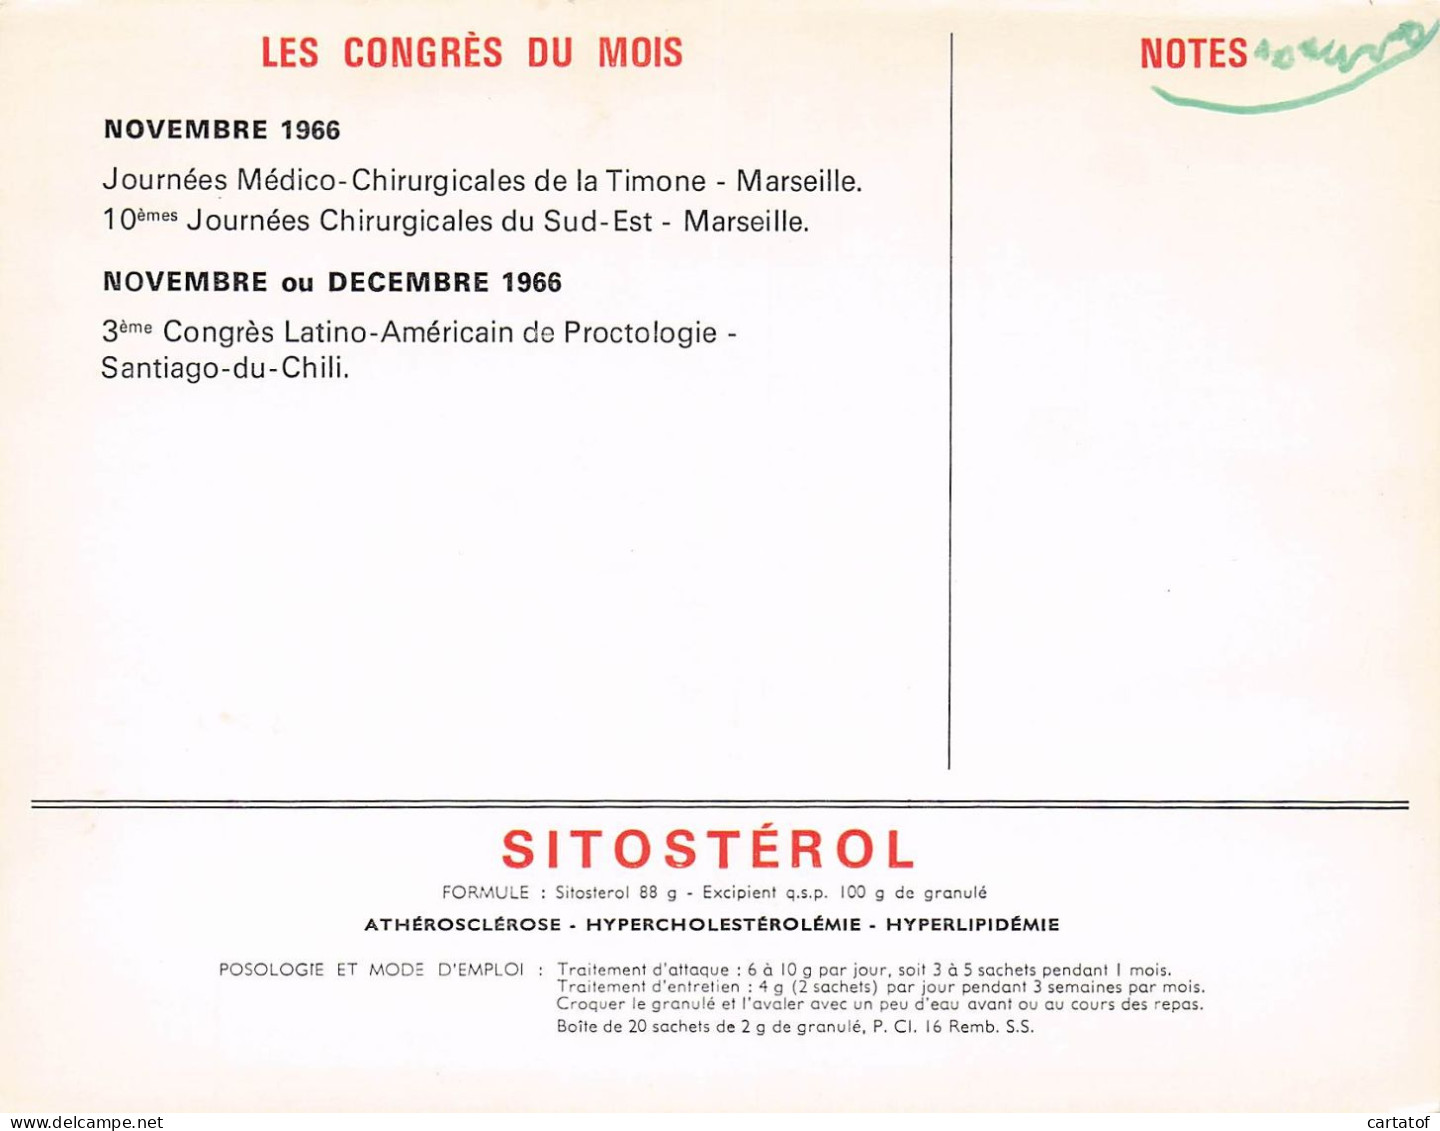 Calendrier des Congrès Médicaux et Scientifiques 1966. LABORATOIRES DELALANDE à COURBEVOIE .